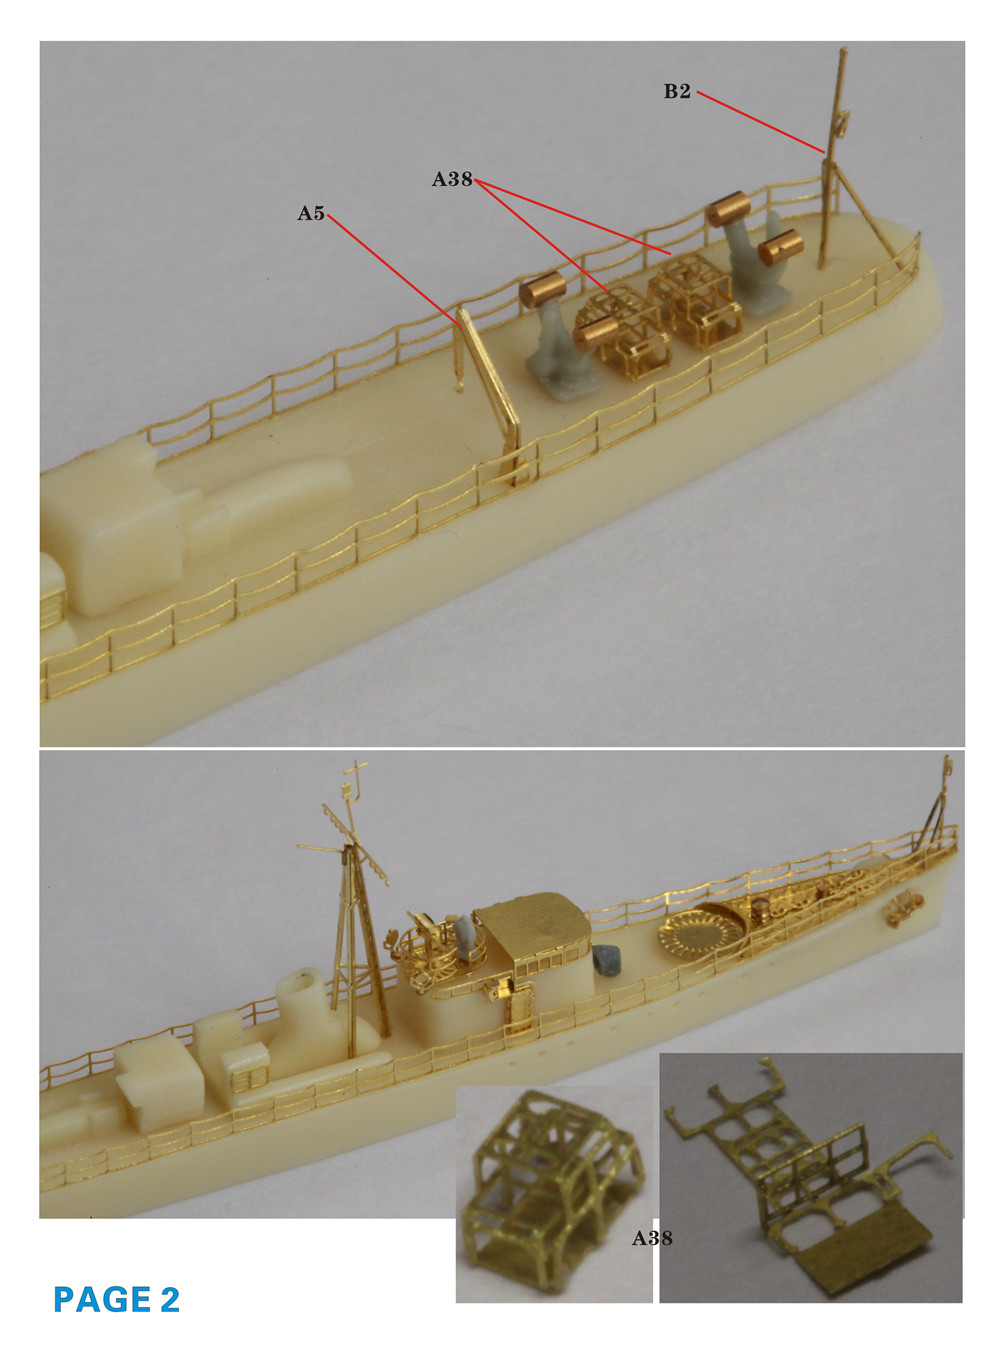 1/700 二战日本海军第53号型驱潜艇树脂模型套件